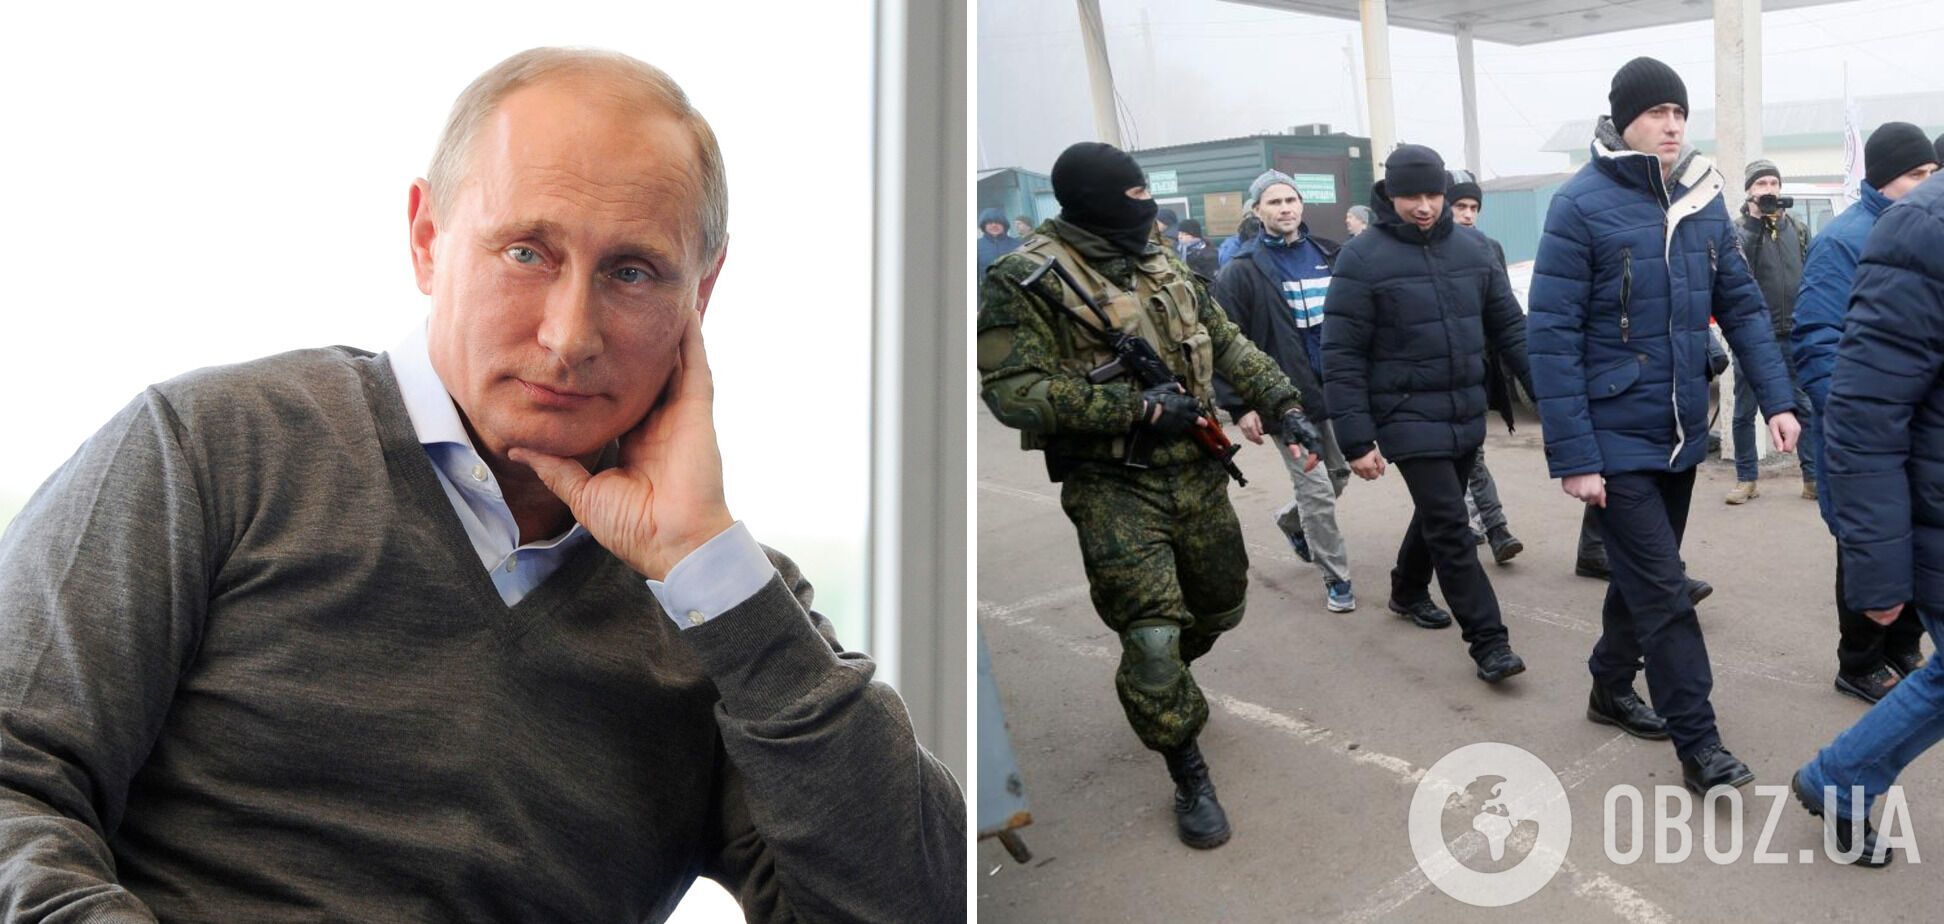 Владимир Путин использует вопрос обмена пленными с Украиной для торга, регулярно пополняя "обменный фонд"